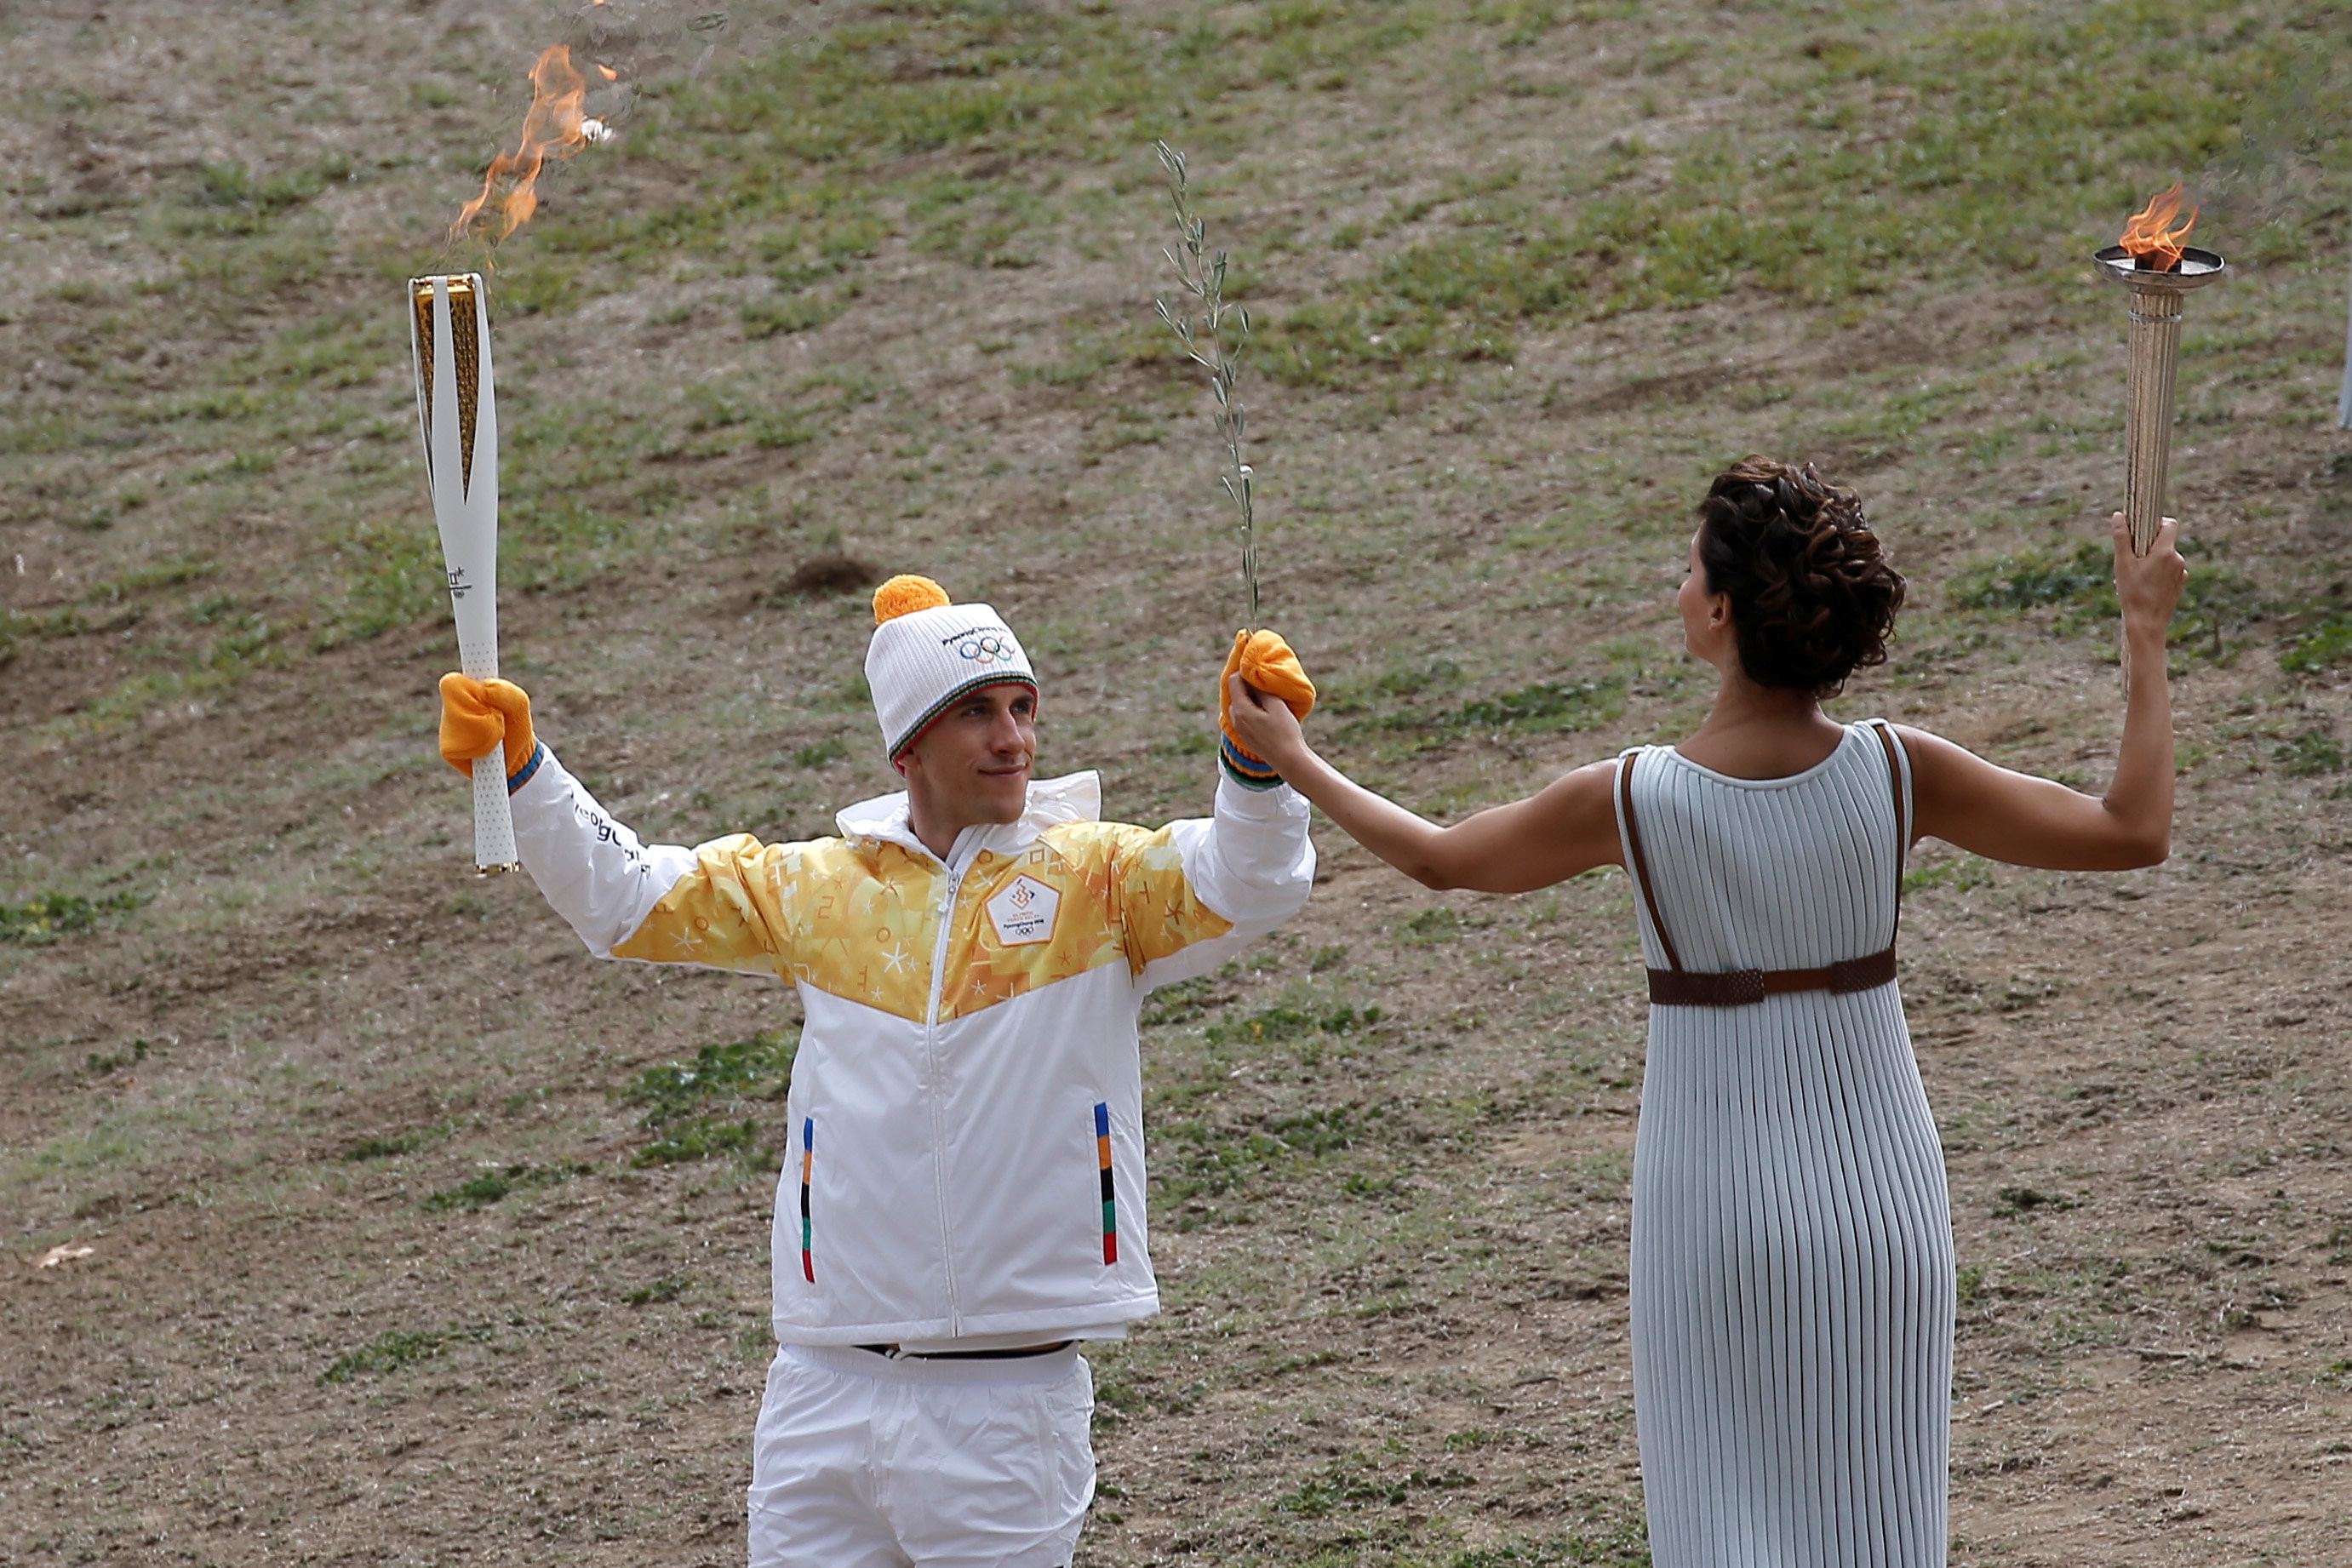 Олимпийский огонь современных игр зажигается. Зажжение олимпийского огня в Греции. Олимпийский огонь на горе Олимп. Олимпийский факел Греция.